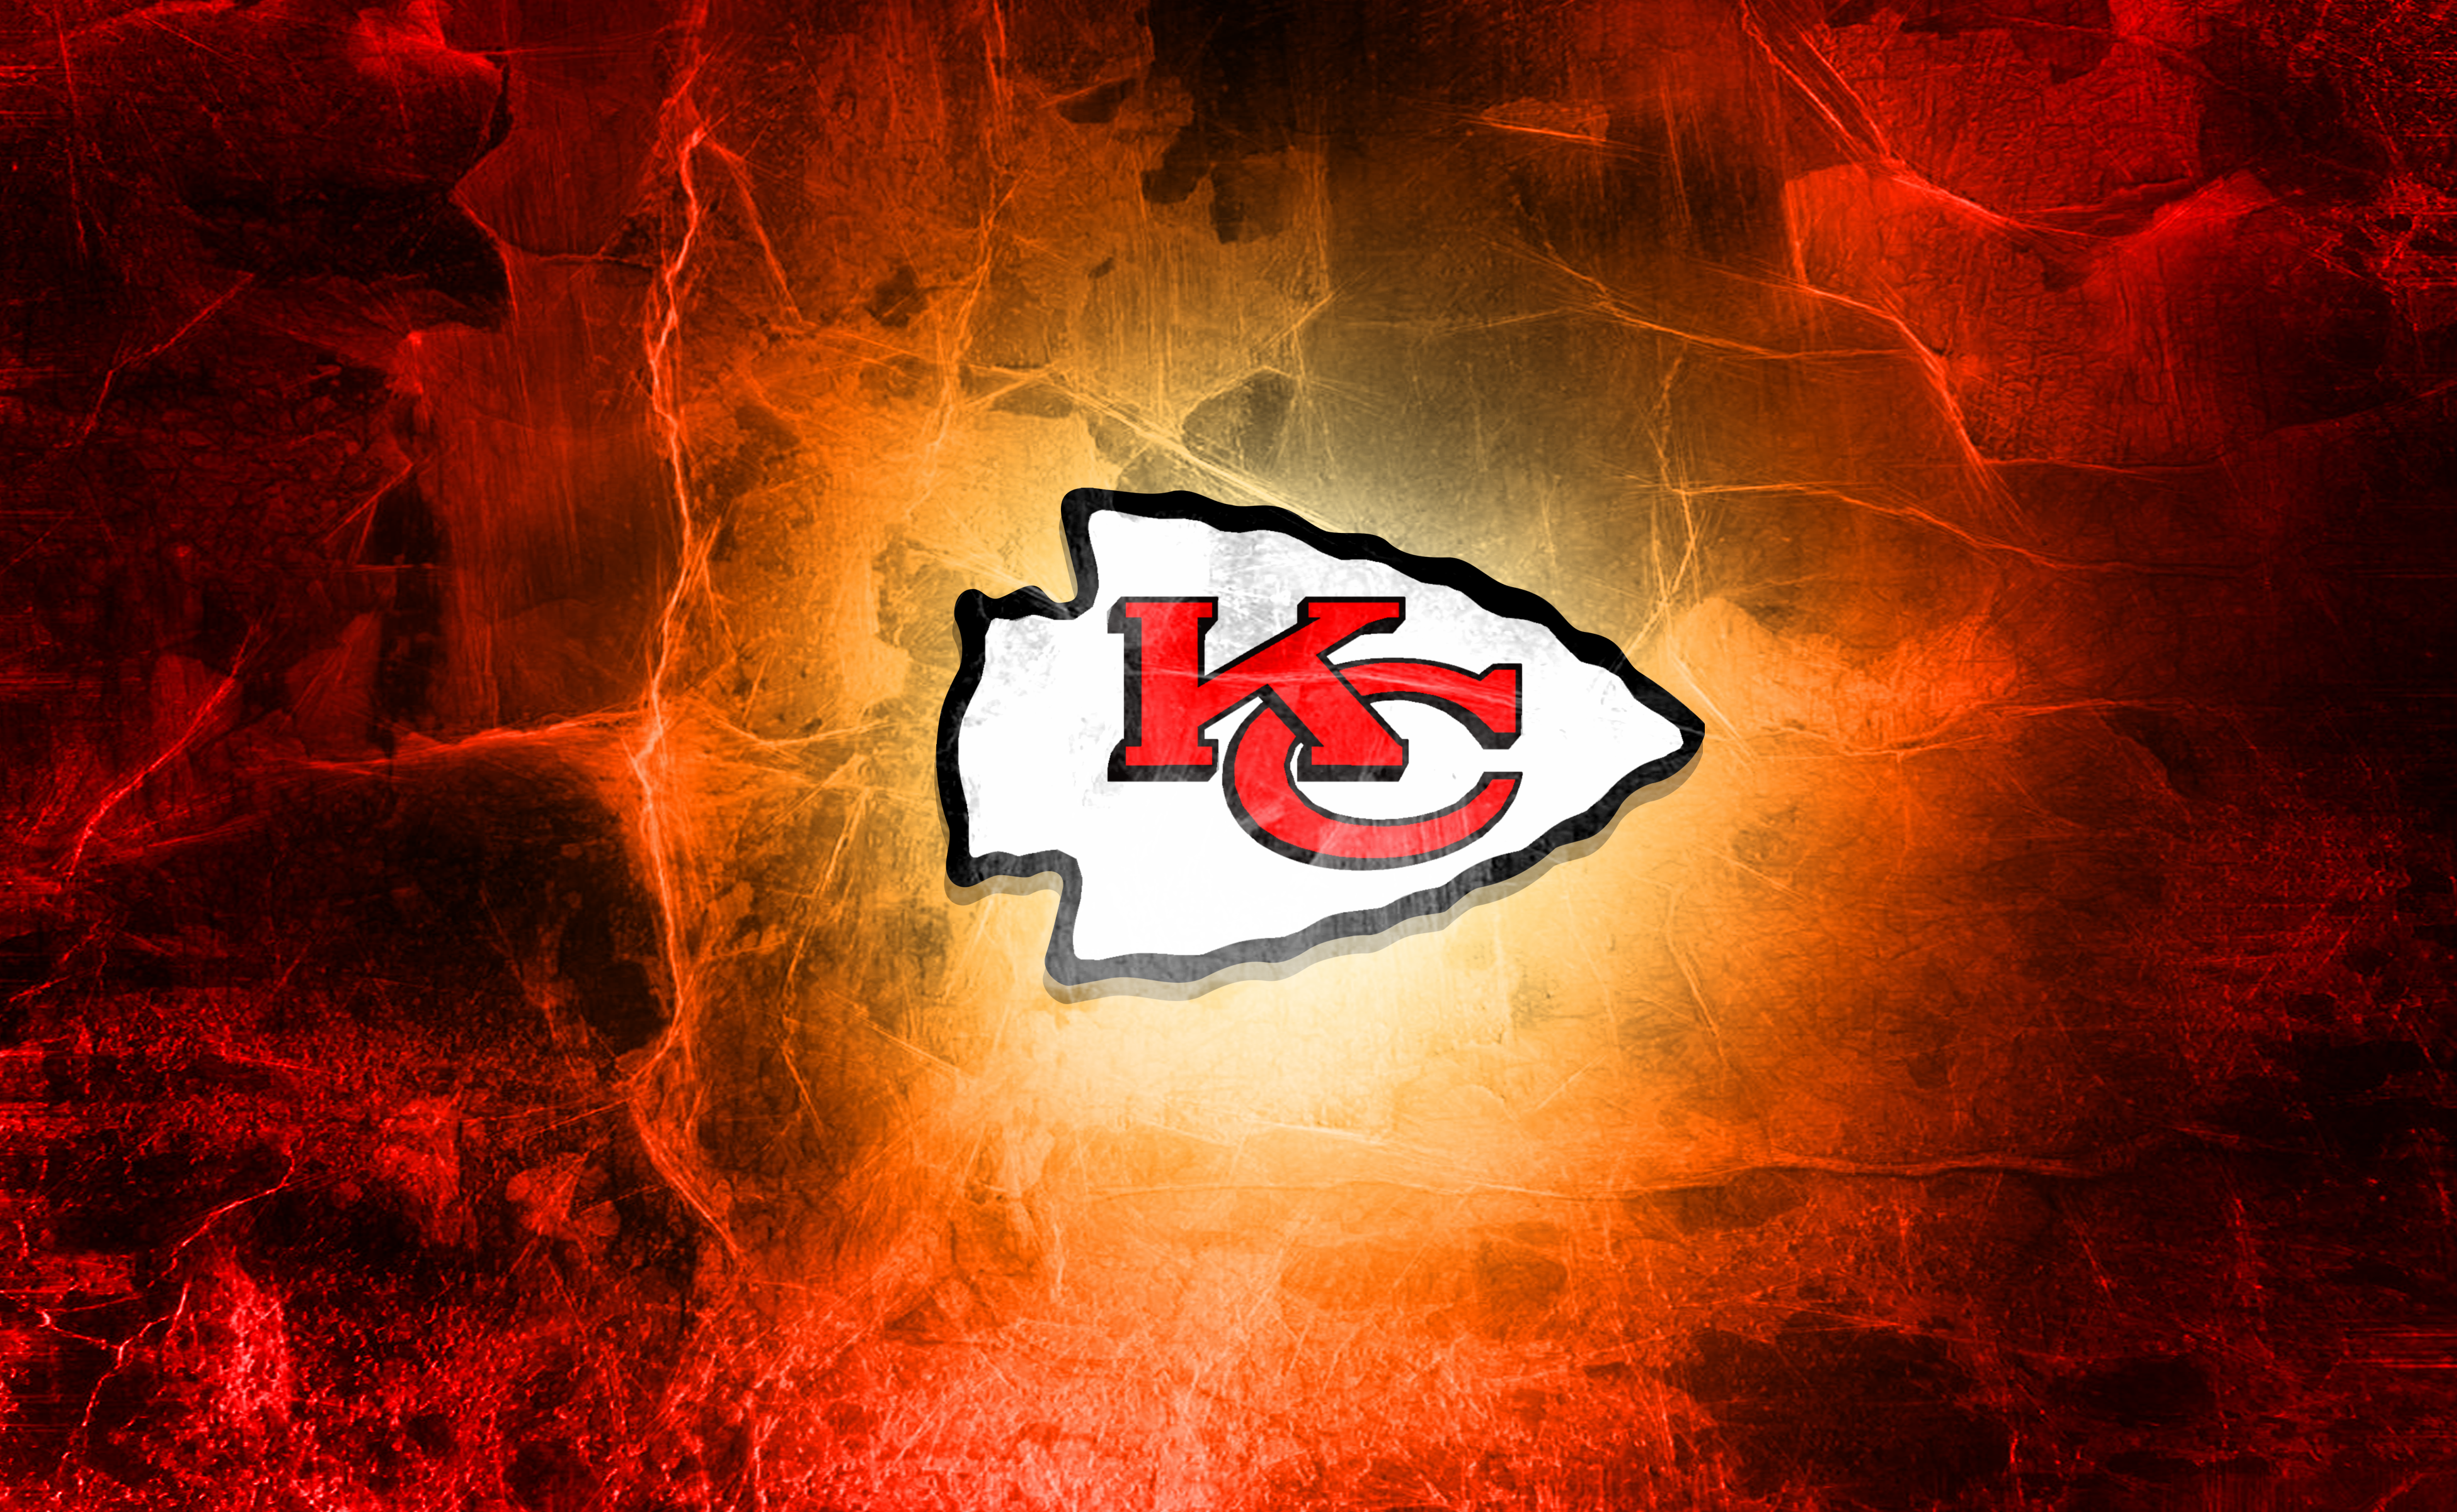 Kansas City Chiefs Backgrounds, Compatible - PC, Mobile, Gadgets| 3900x2400 px